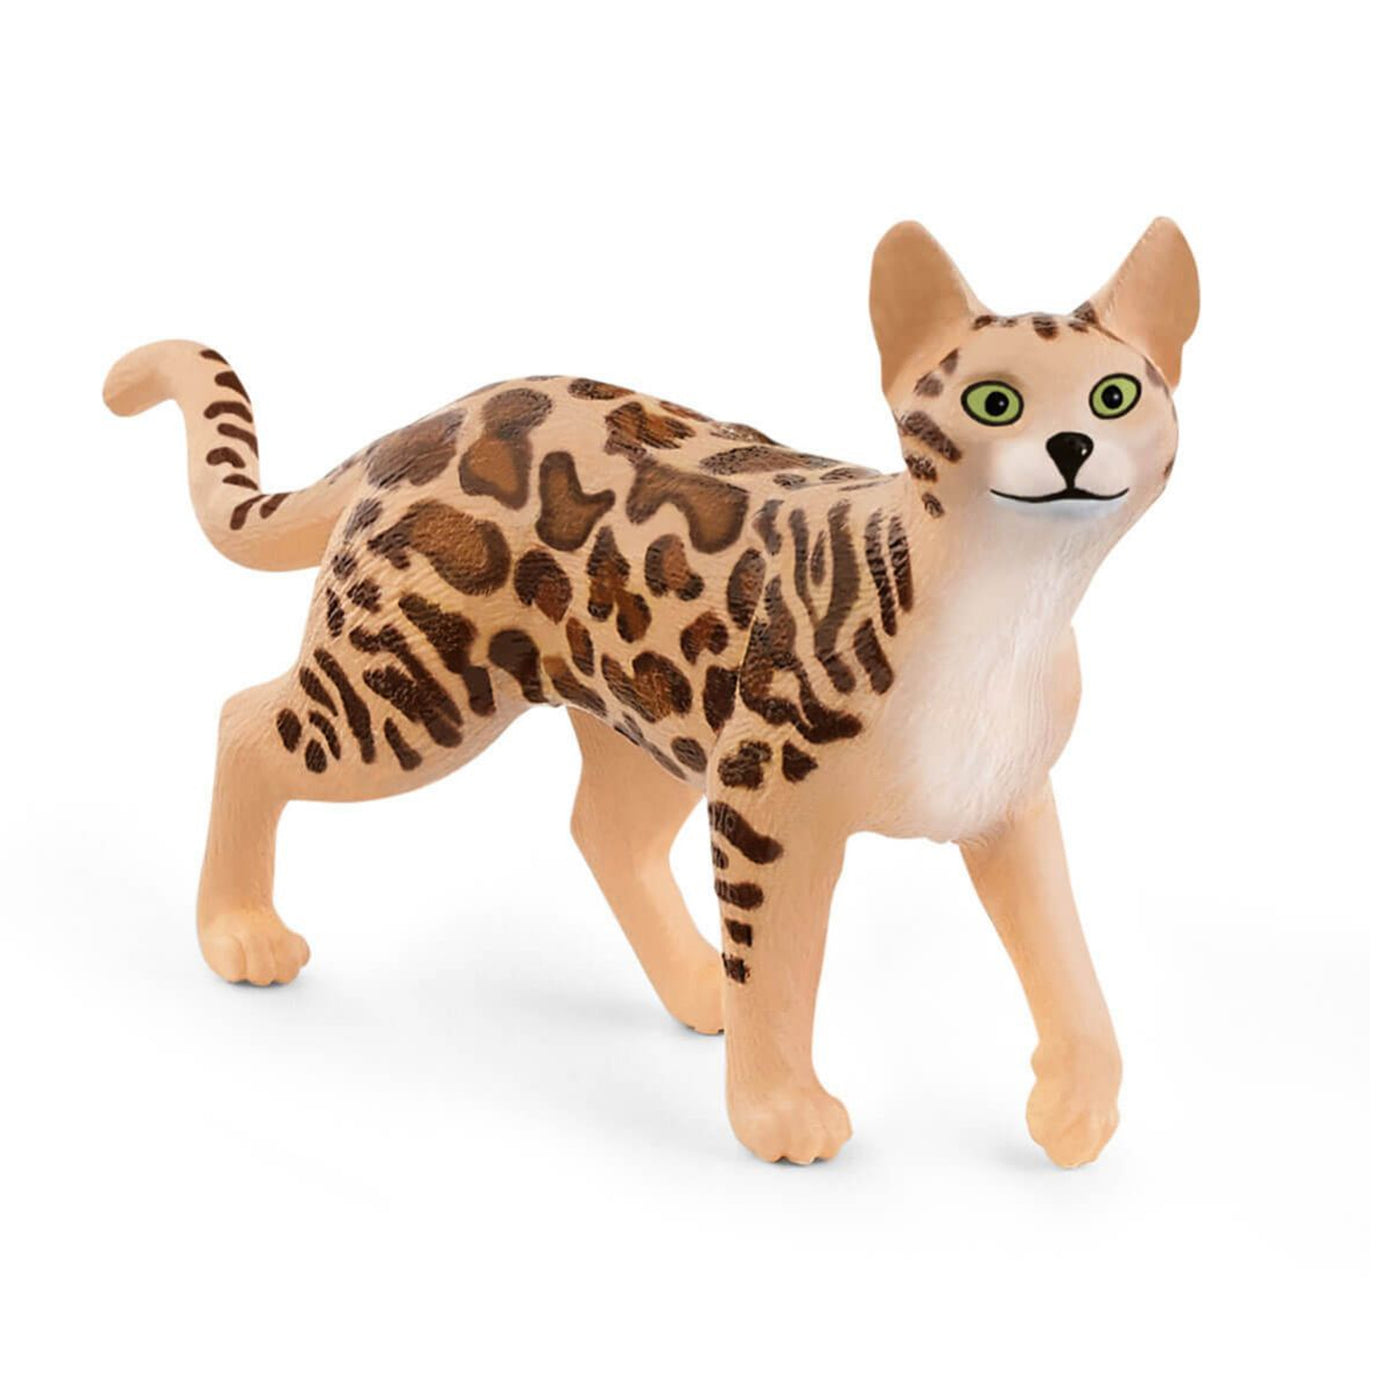 Schleich Farm World Bengal Cat Toy Figurine